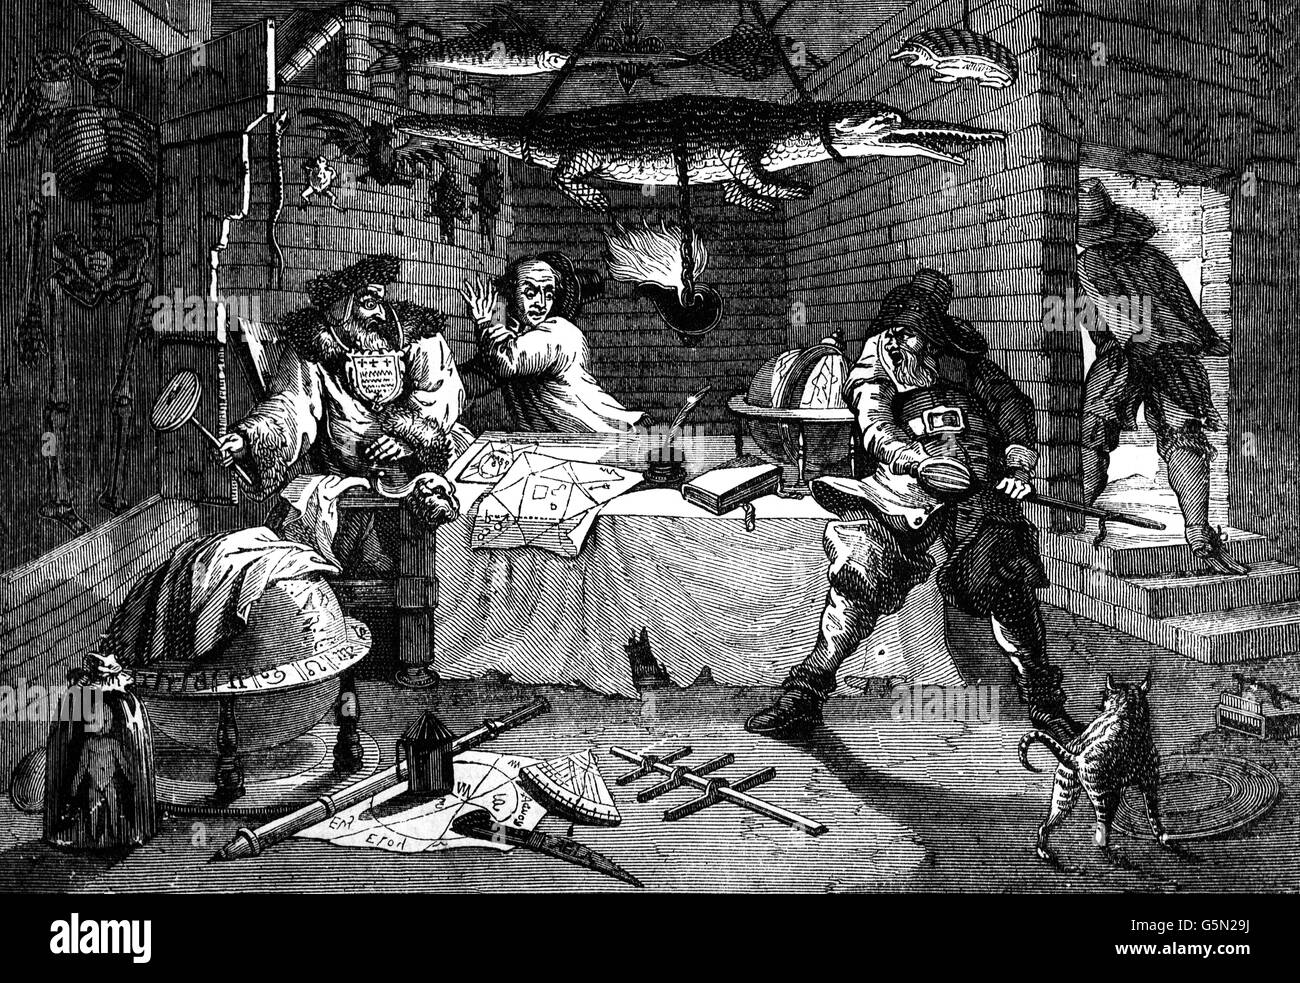 Una scena da Hudibras, un inglese polemica satirico su Roundheads, Puritans, presbiteriani e molte delle altre fazioni coinvolte nella guerra civile inglese. Scritto da Samuel Butler (1613 - 1680), poeta e Satiro. Foto Stock